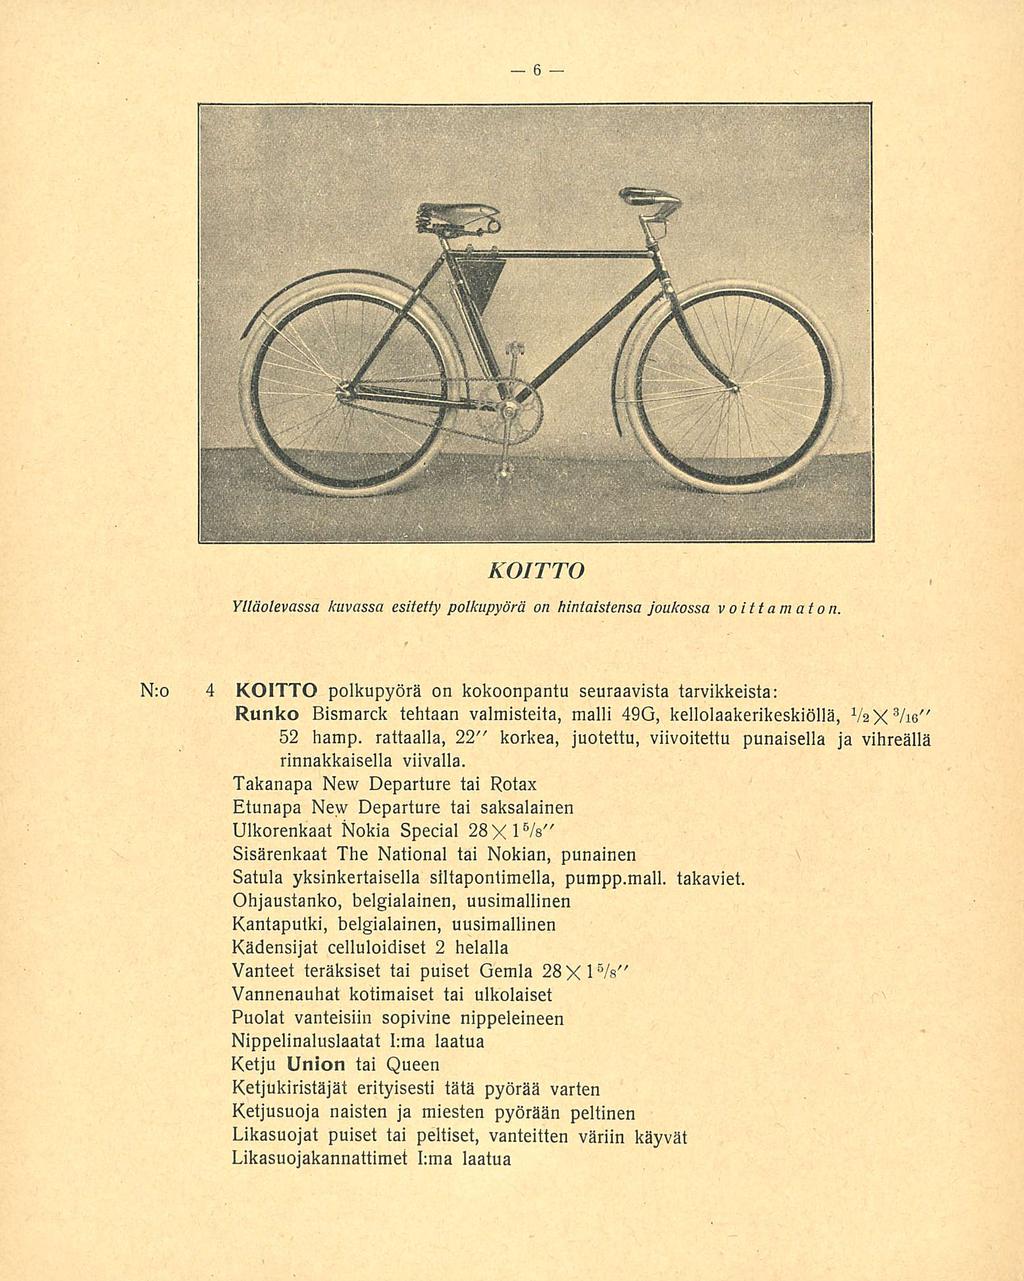 KOITTO Ylläolevassa kuvassa esitetty polkupyörä on hintaistensa joukossa voittamaton, Nro 4 KOITTO polkupyörä on kokoonpantu seuraavista tarvikkeista: Runko Bismarck tehtaan valmisteita, malli 49G,